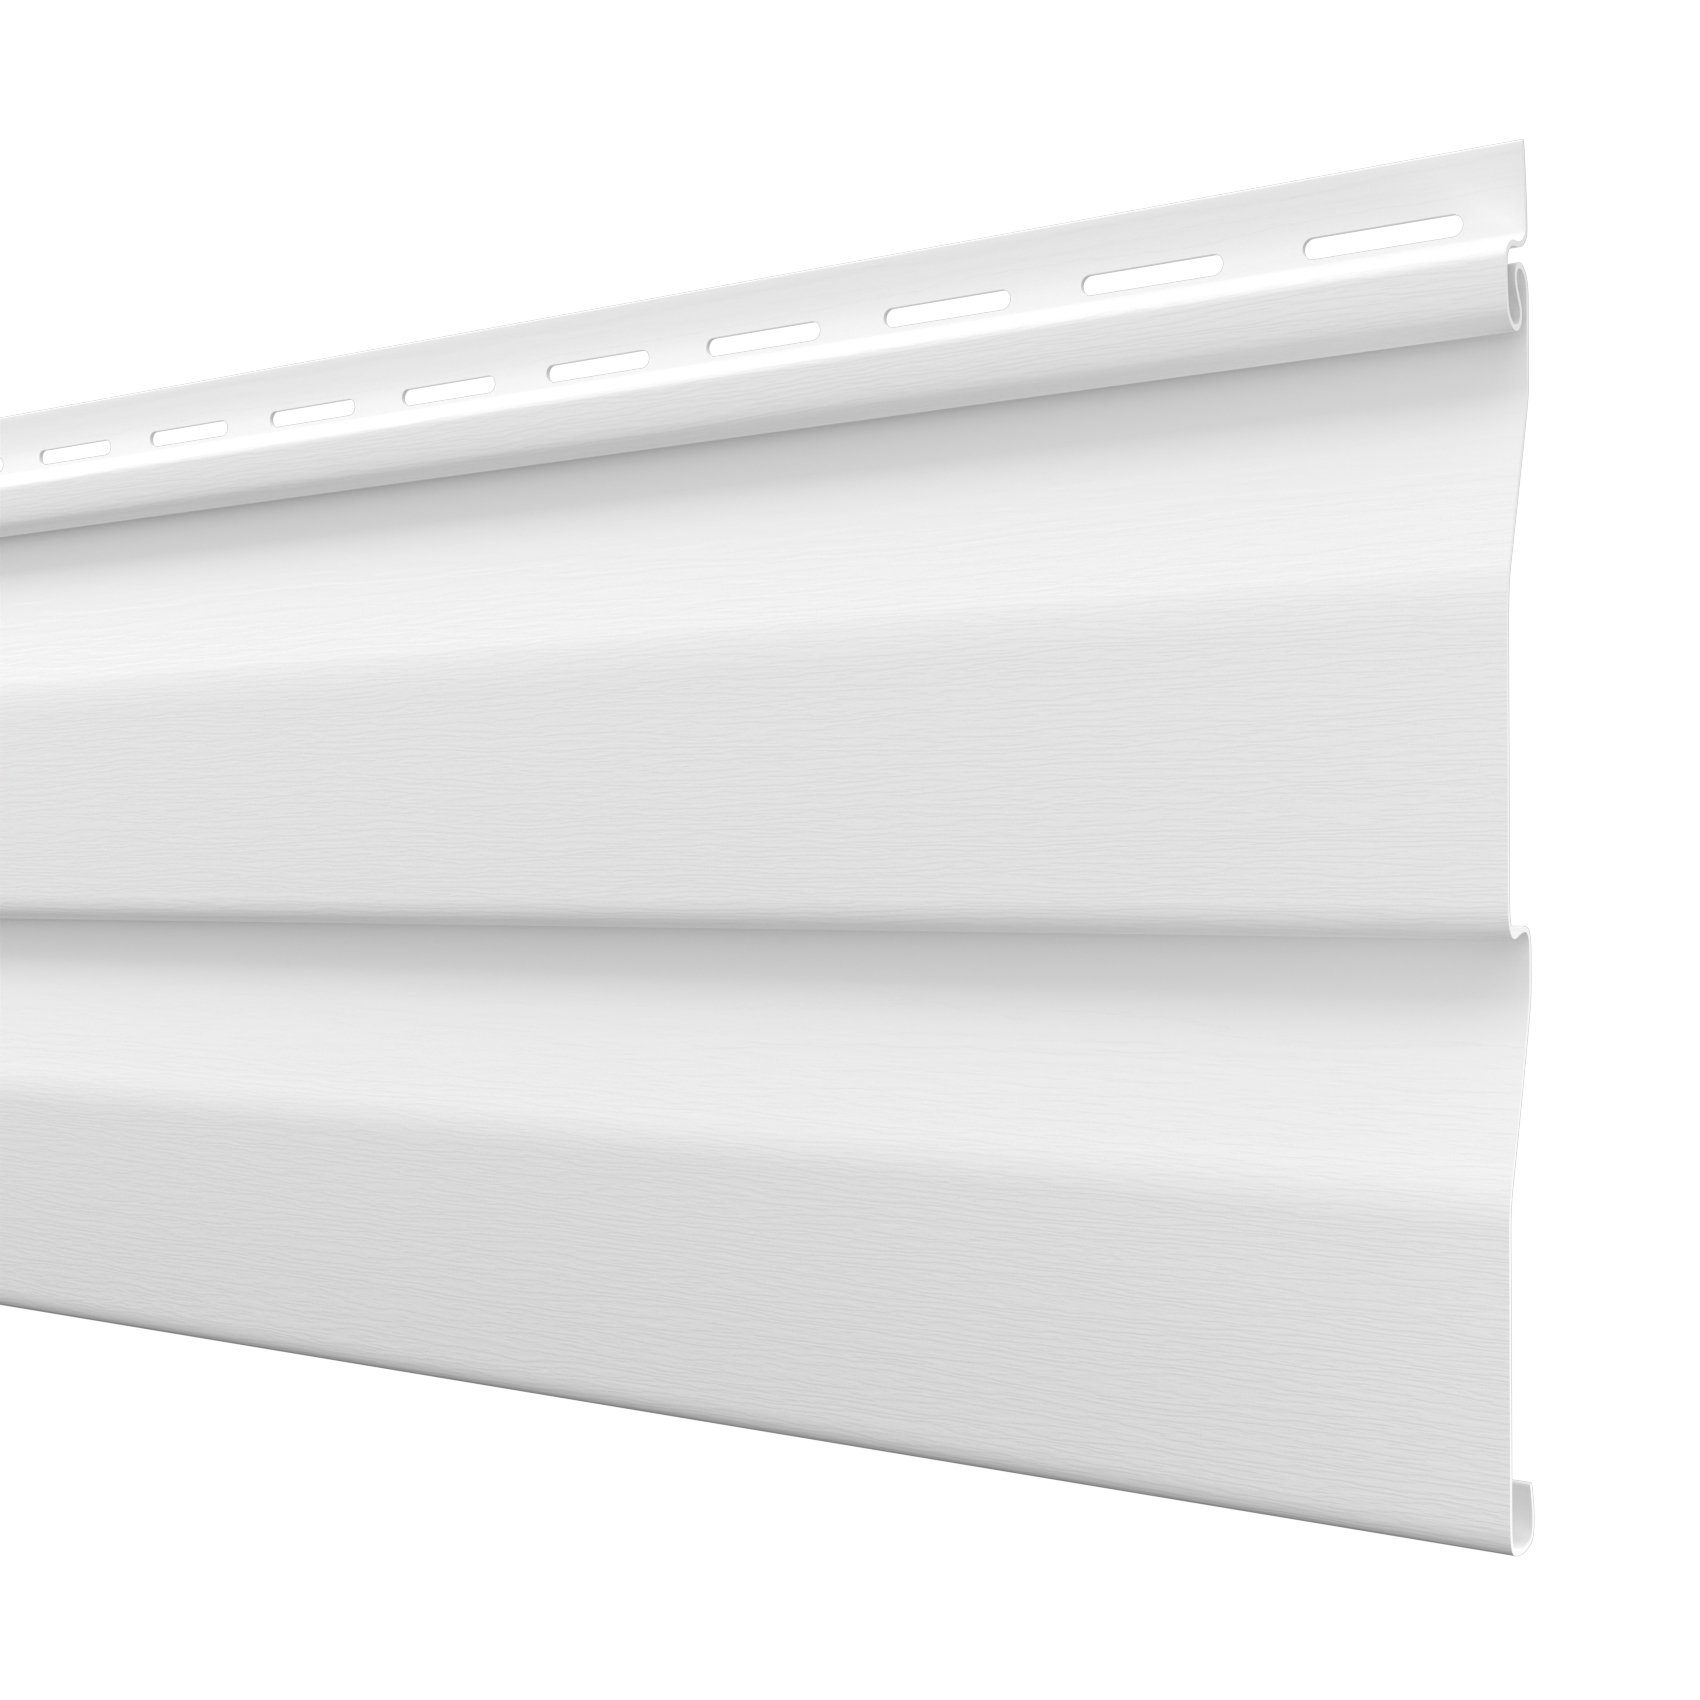 Hexim Verblendsteine, (Fassadenverkleidung Kunststoffpaneele & Zubehör, Verkleidung Außenwand Fassade, PVC-U Siding - (1 Paneel weiß) Haus Wand 0,48 Quadratmeter)